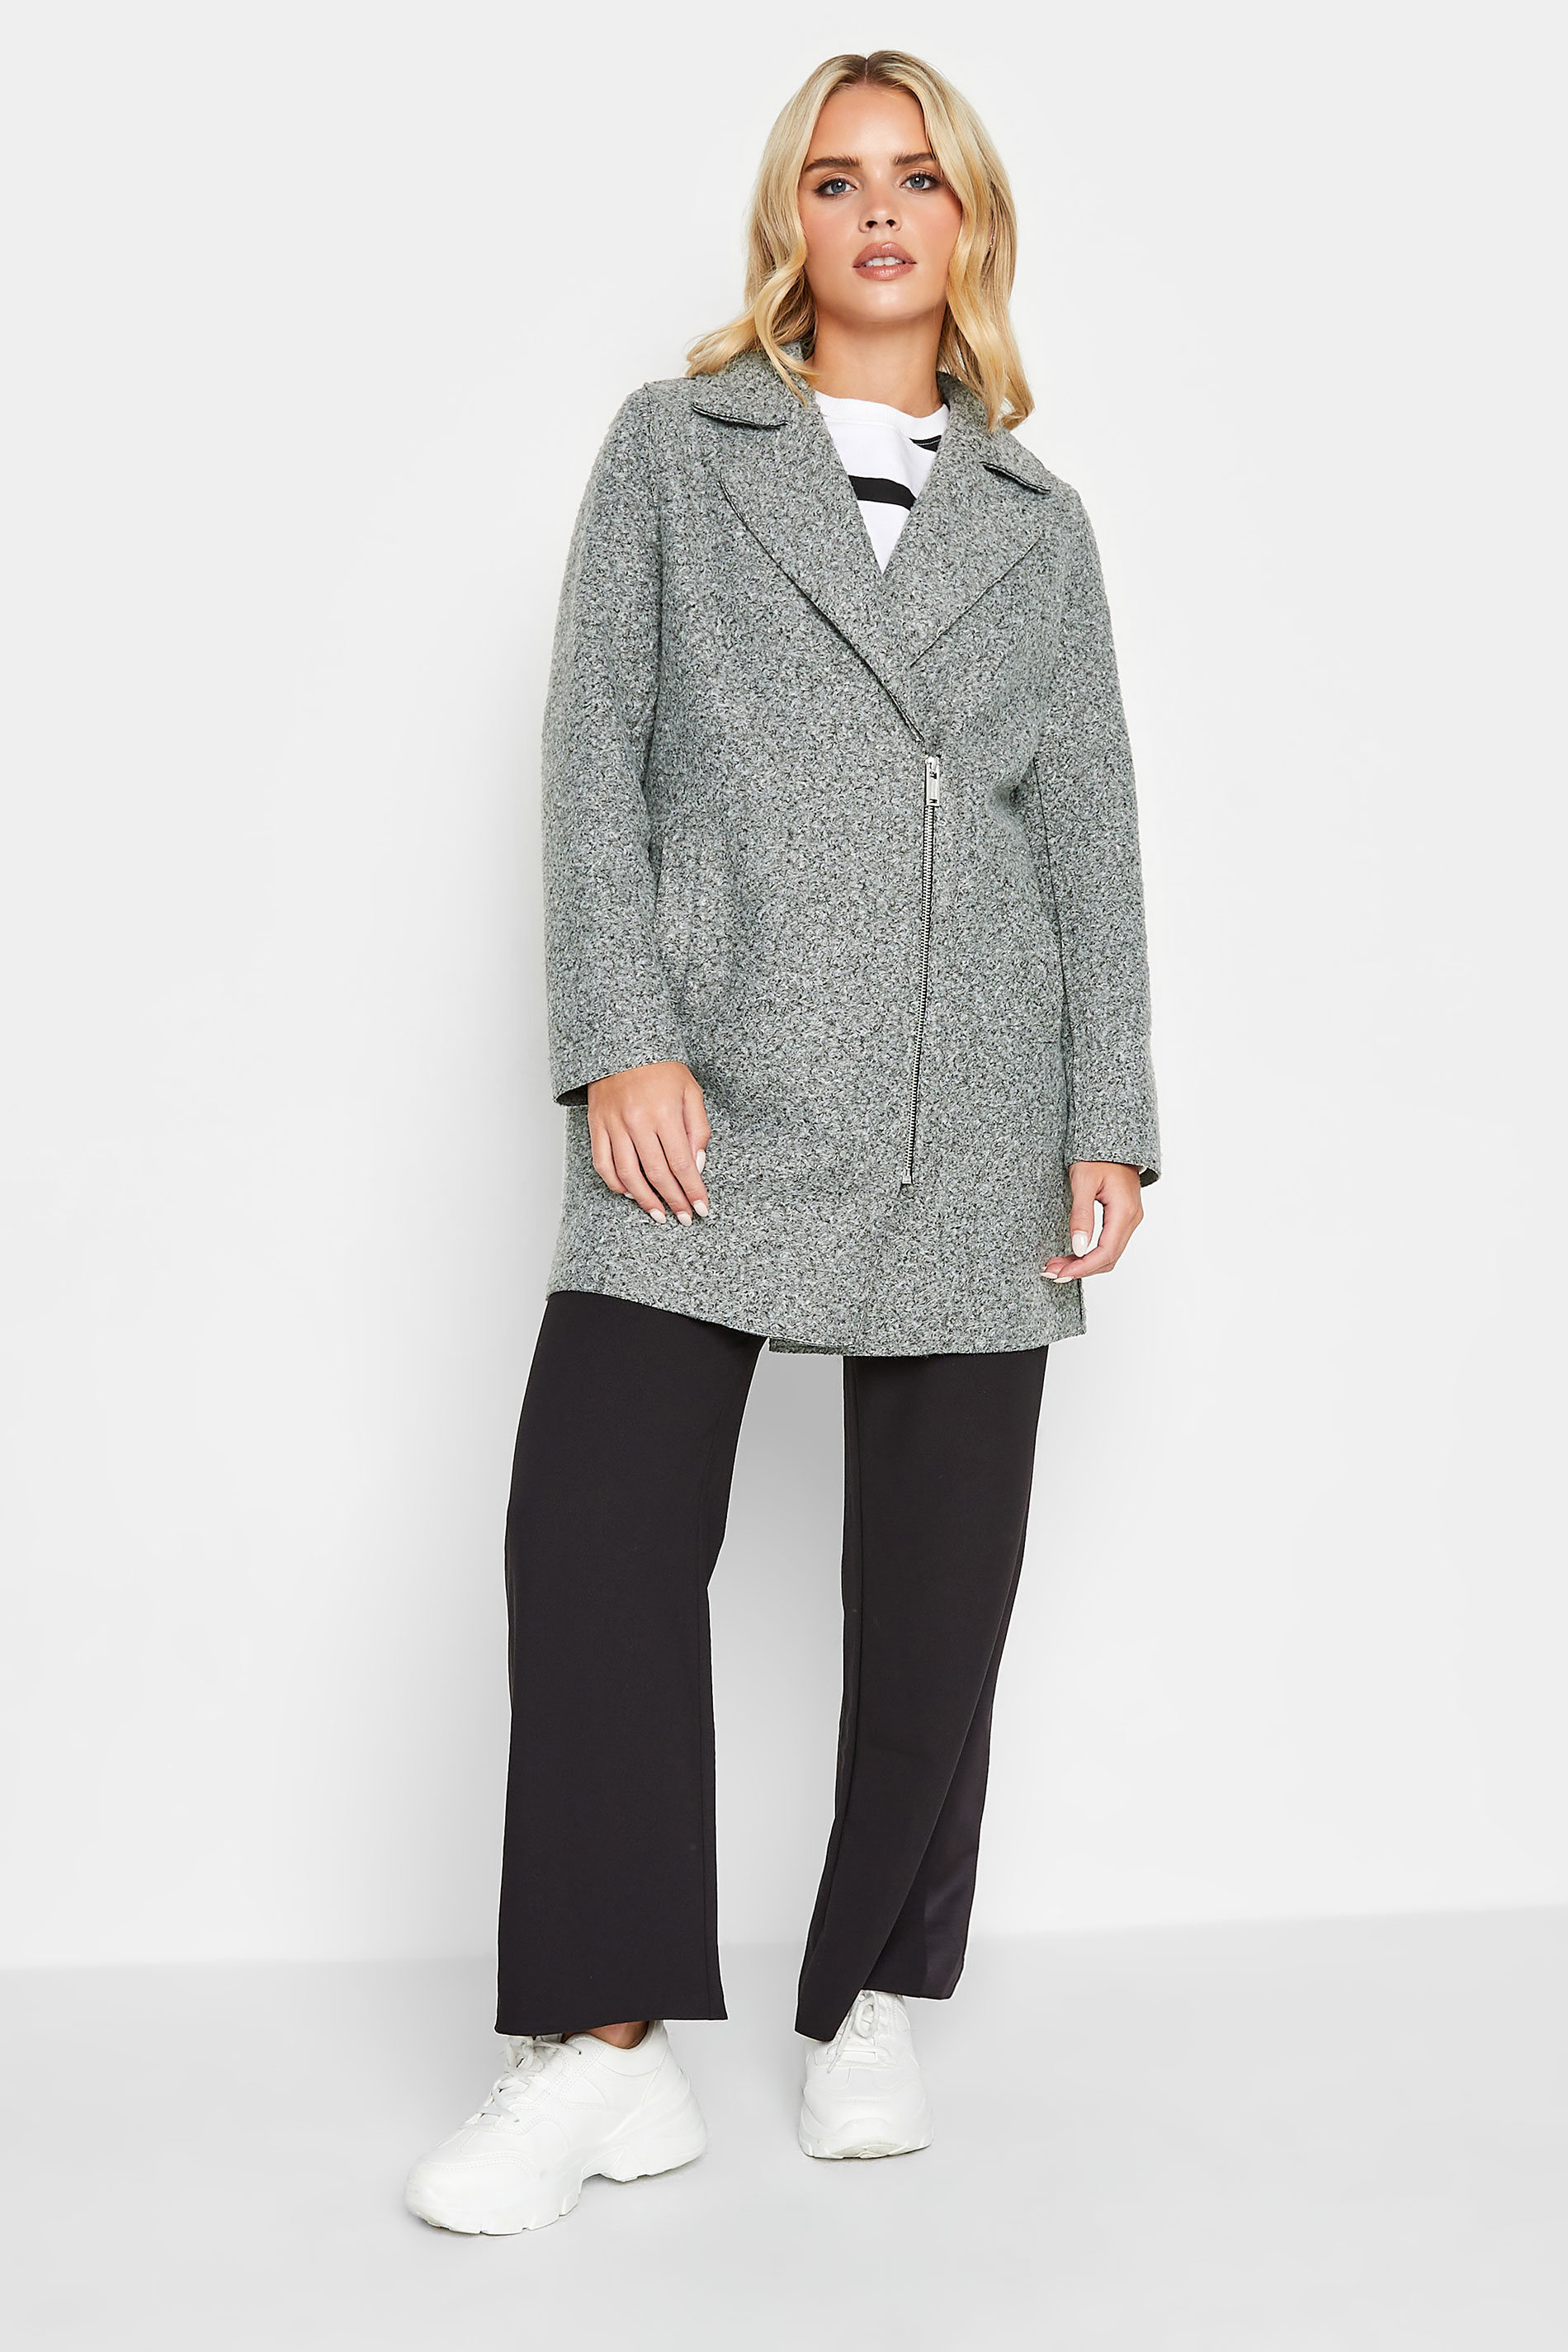 PixieGirl Grey Boucle Formal Coat | PixieGirl 3